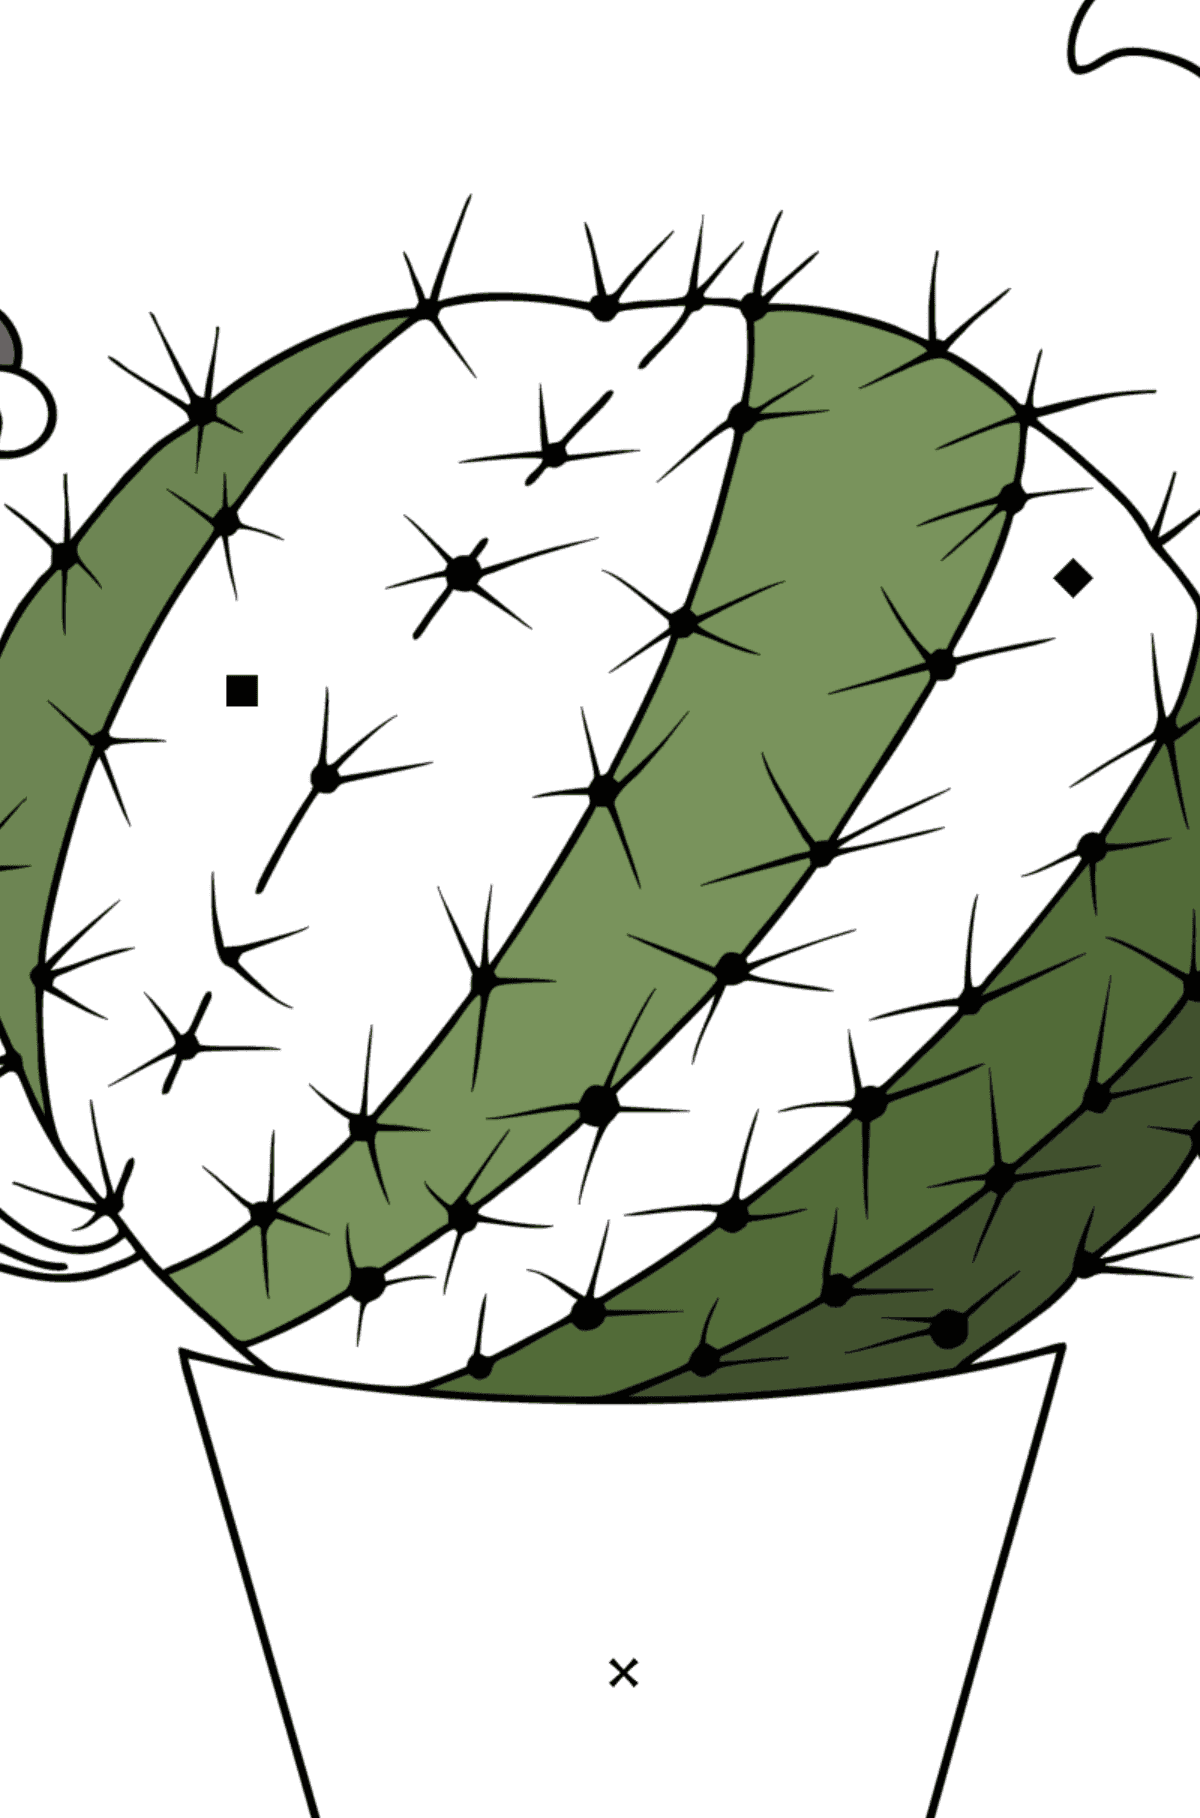 Kolorowanka Kaktus w doniczce - Kolorowanie według symboli dla dzieci